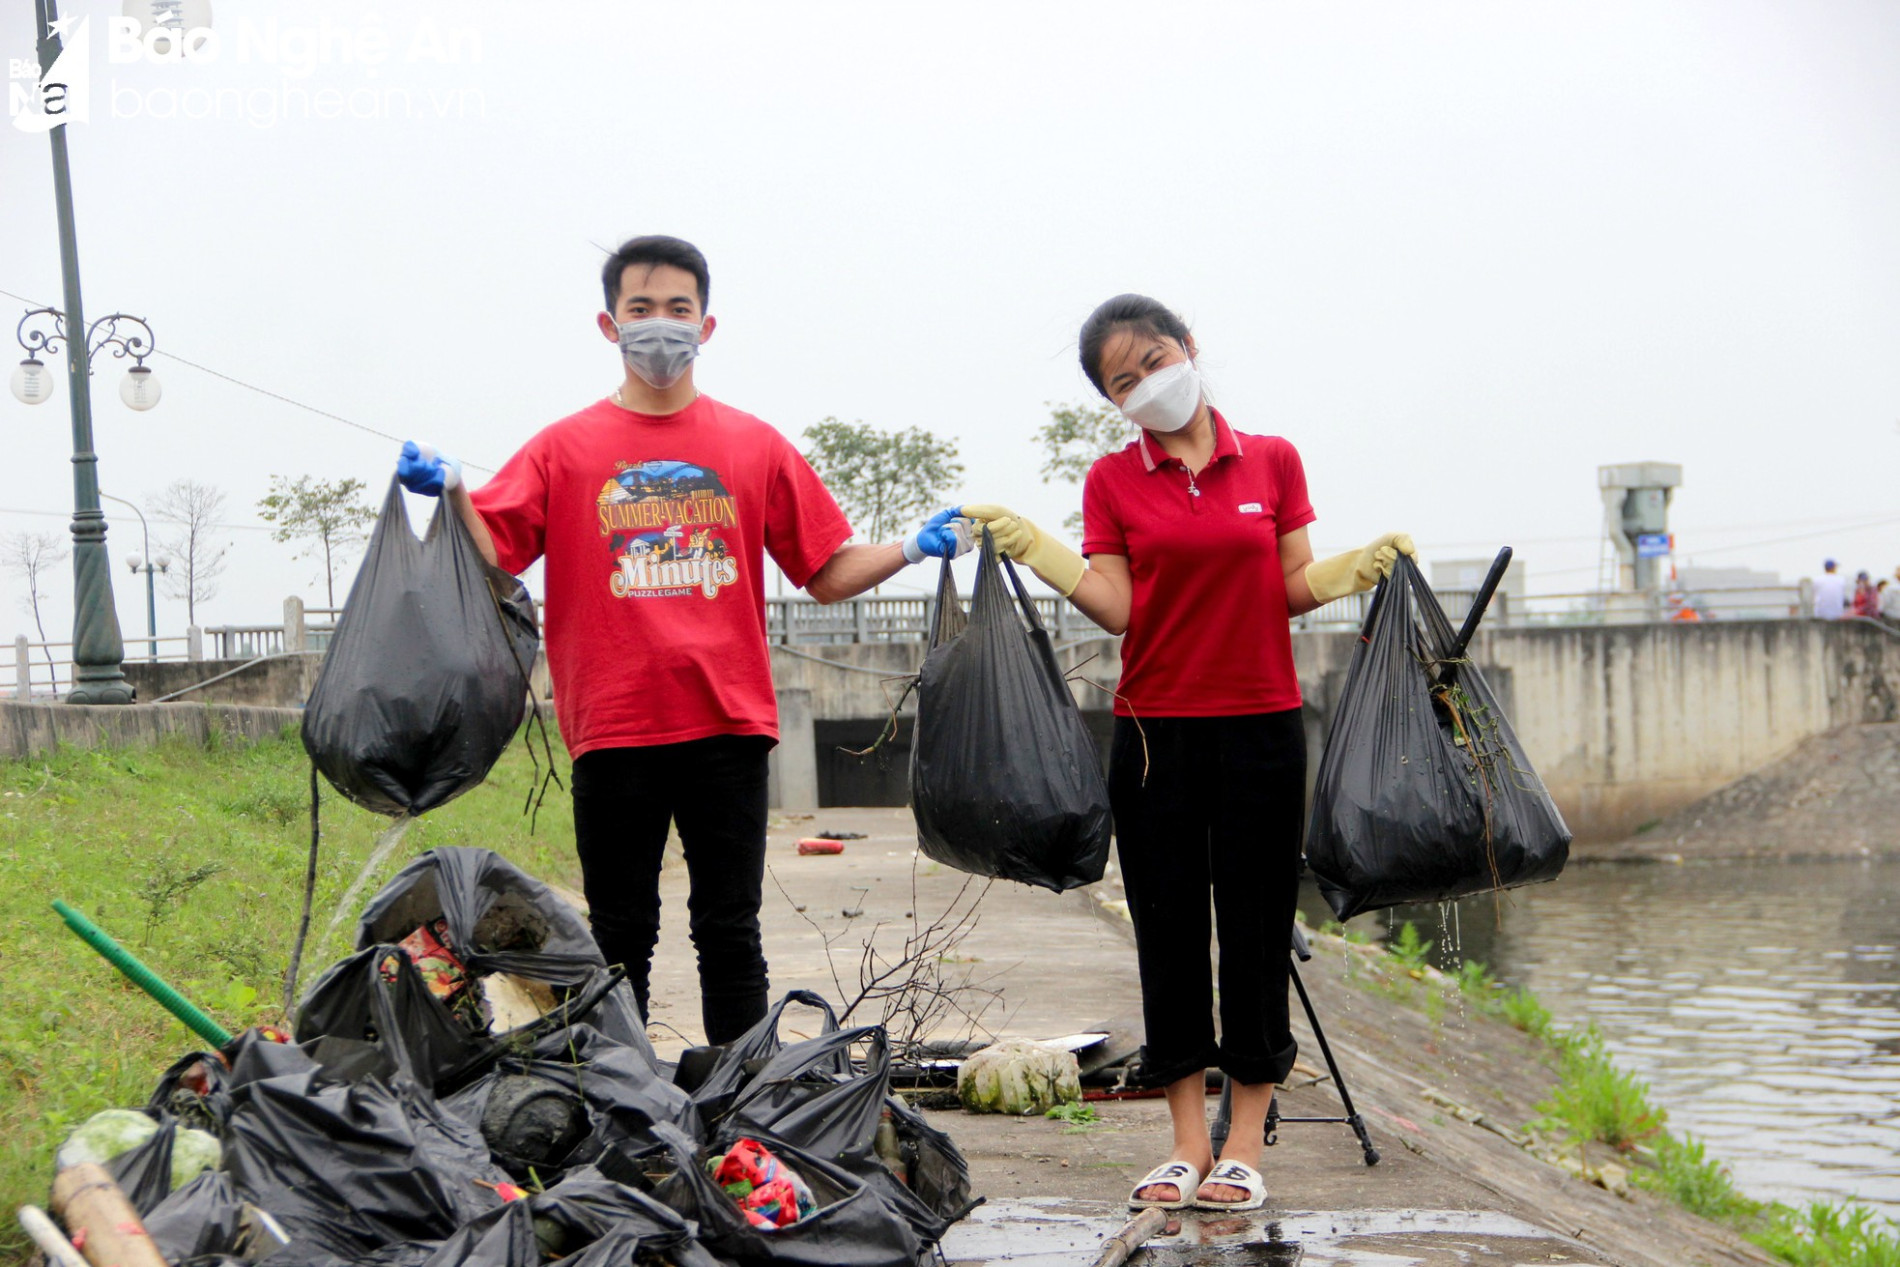 Nghệ An Xanh - Nhóm bạn trẻ gen Z tình nguyện dọn rác, làm sạch môi trường ảnh 8